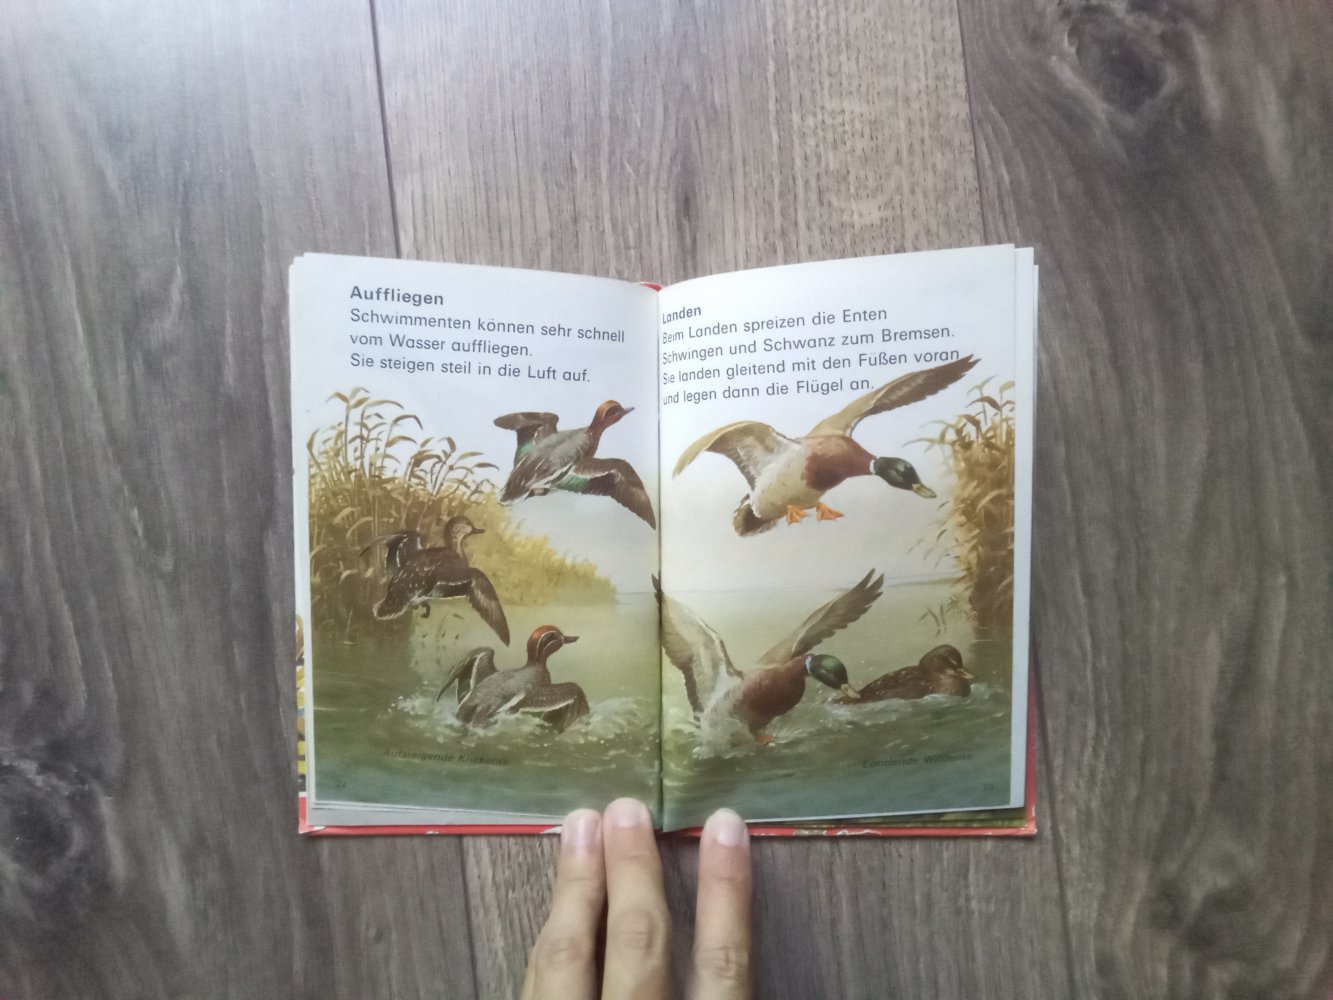 Enten und Schwäne Sachbuch Bd 2 Lesen leben lernen wissen